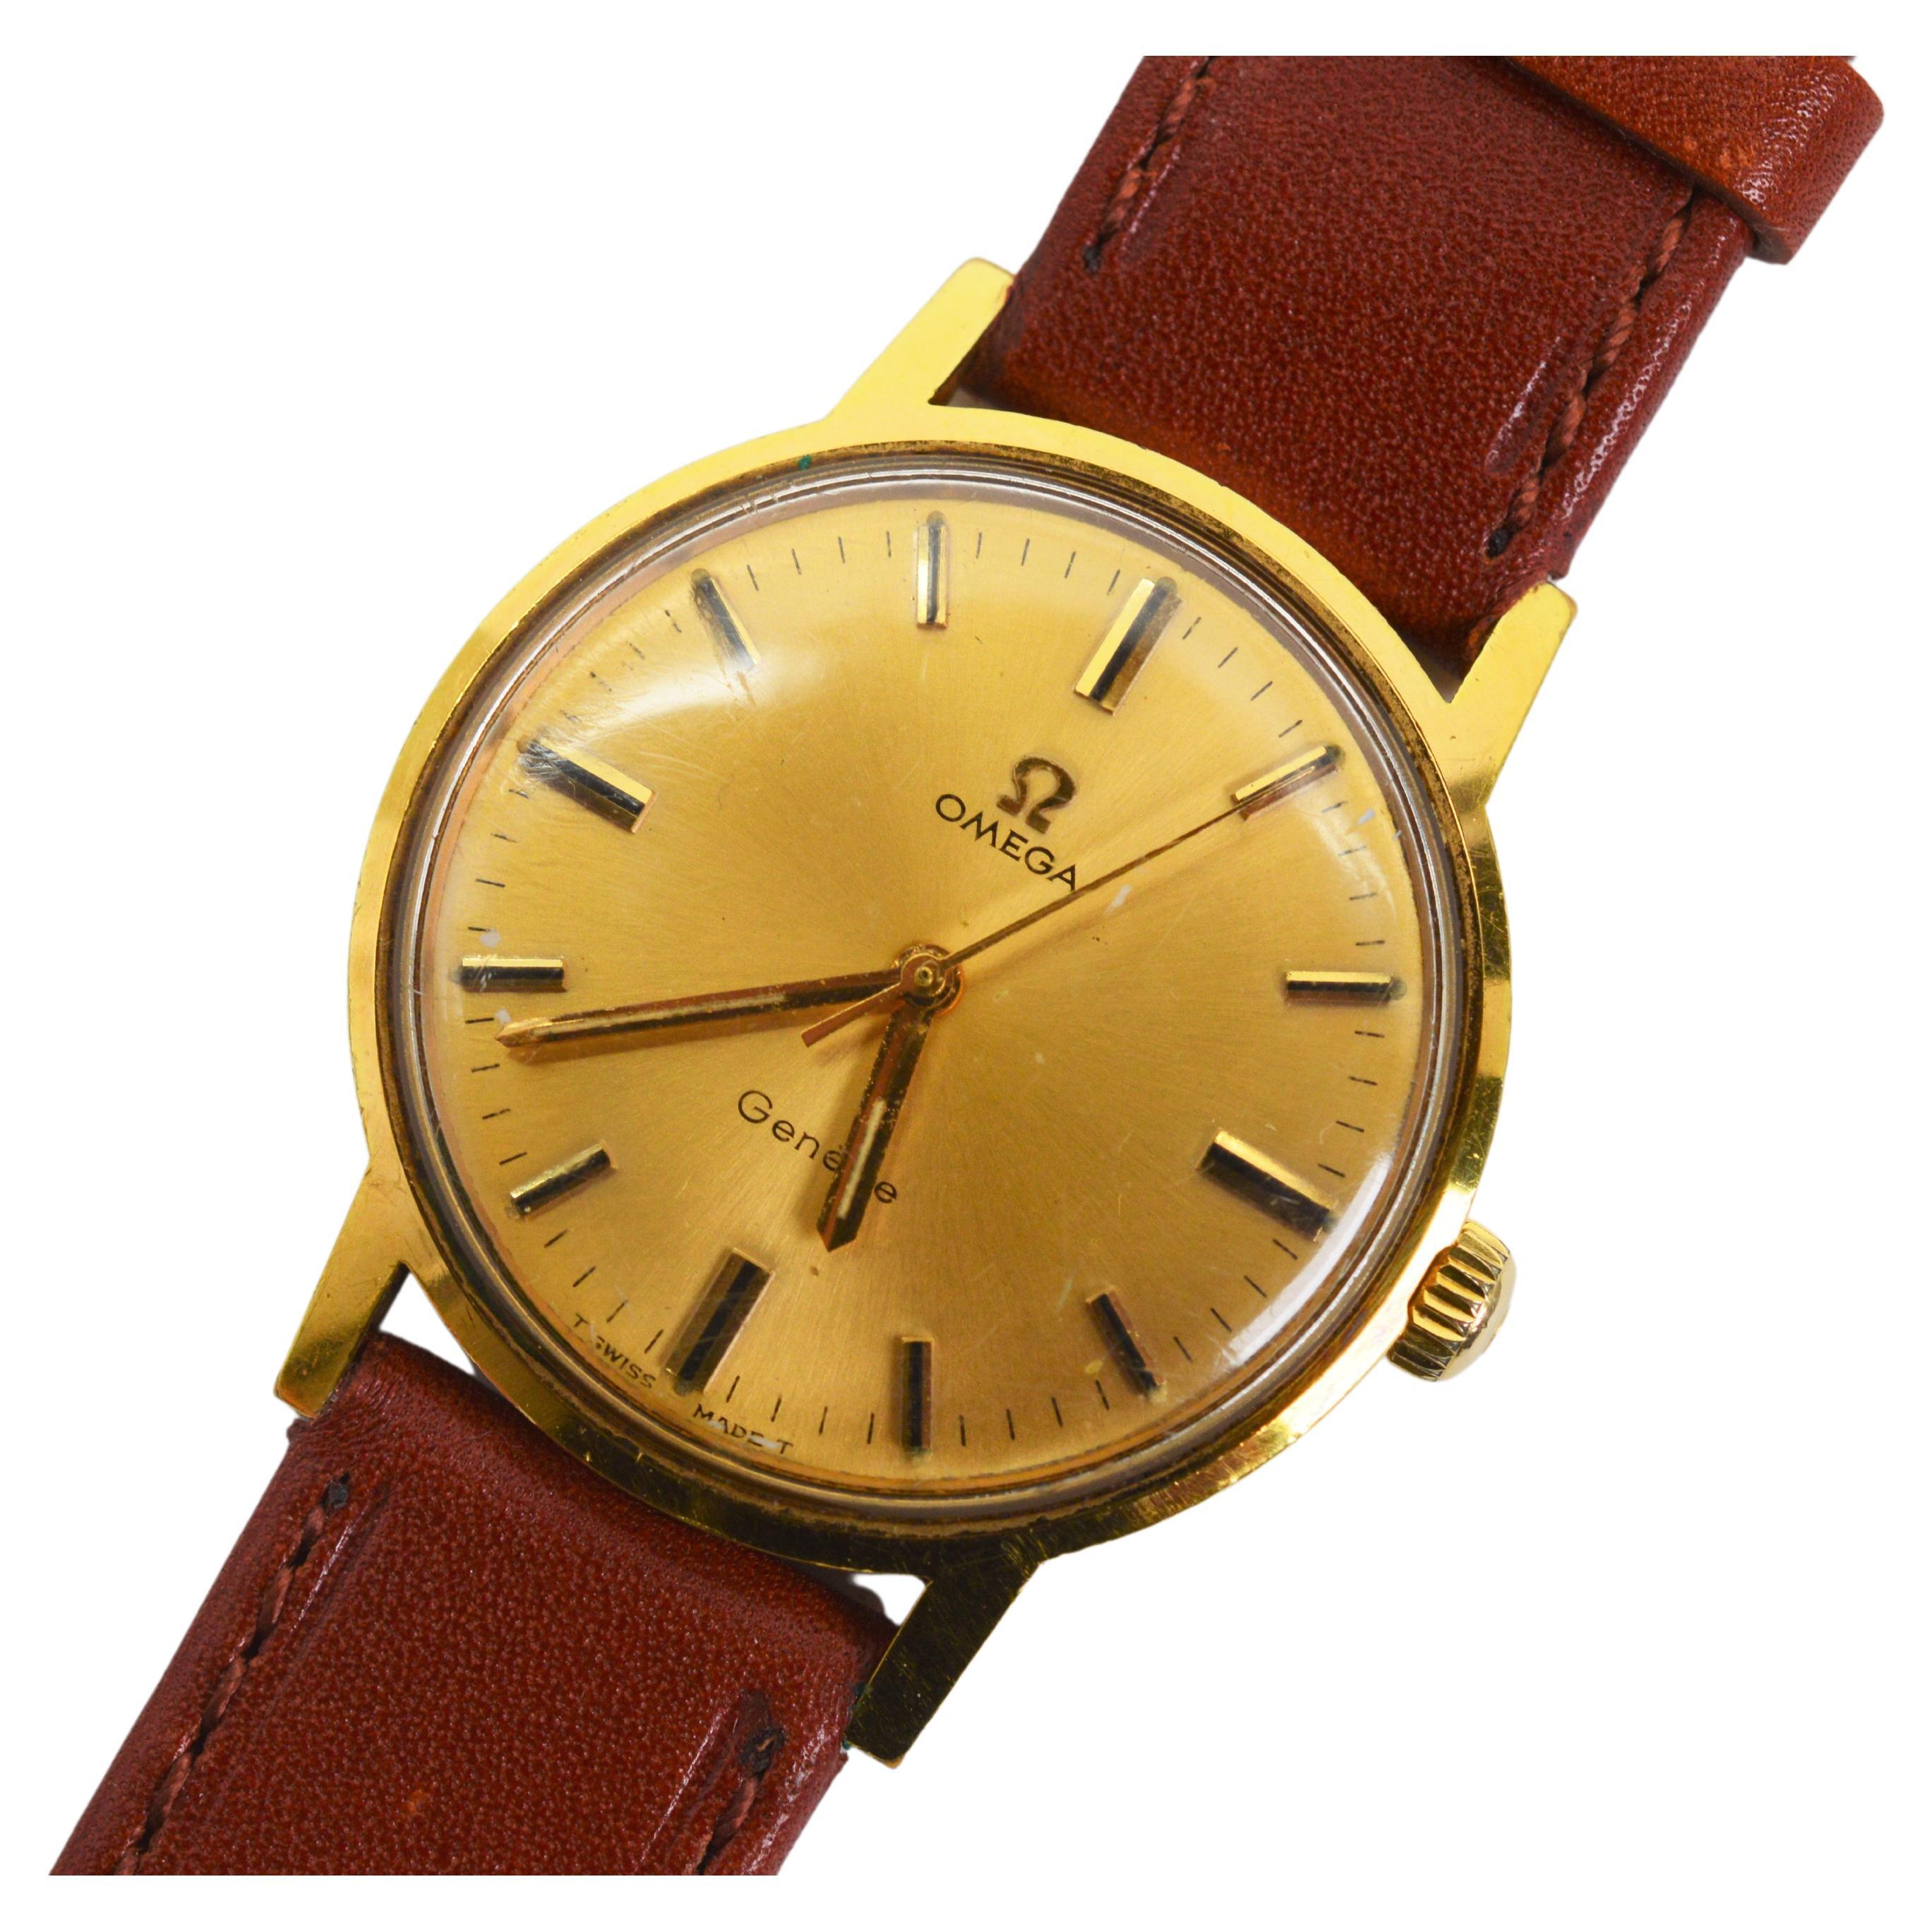 Omega 601 Gold Top Steel Swiss Men's Wrist Watch